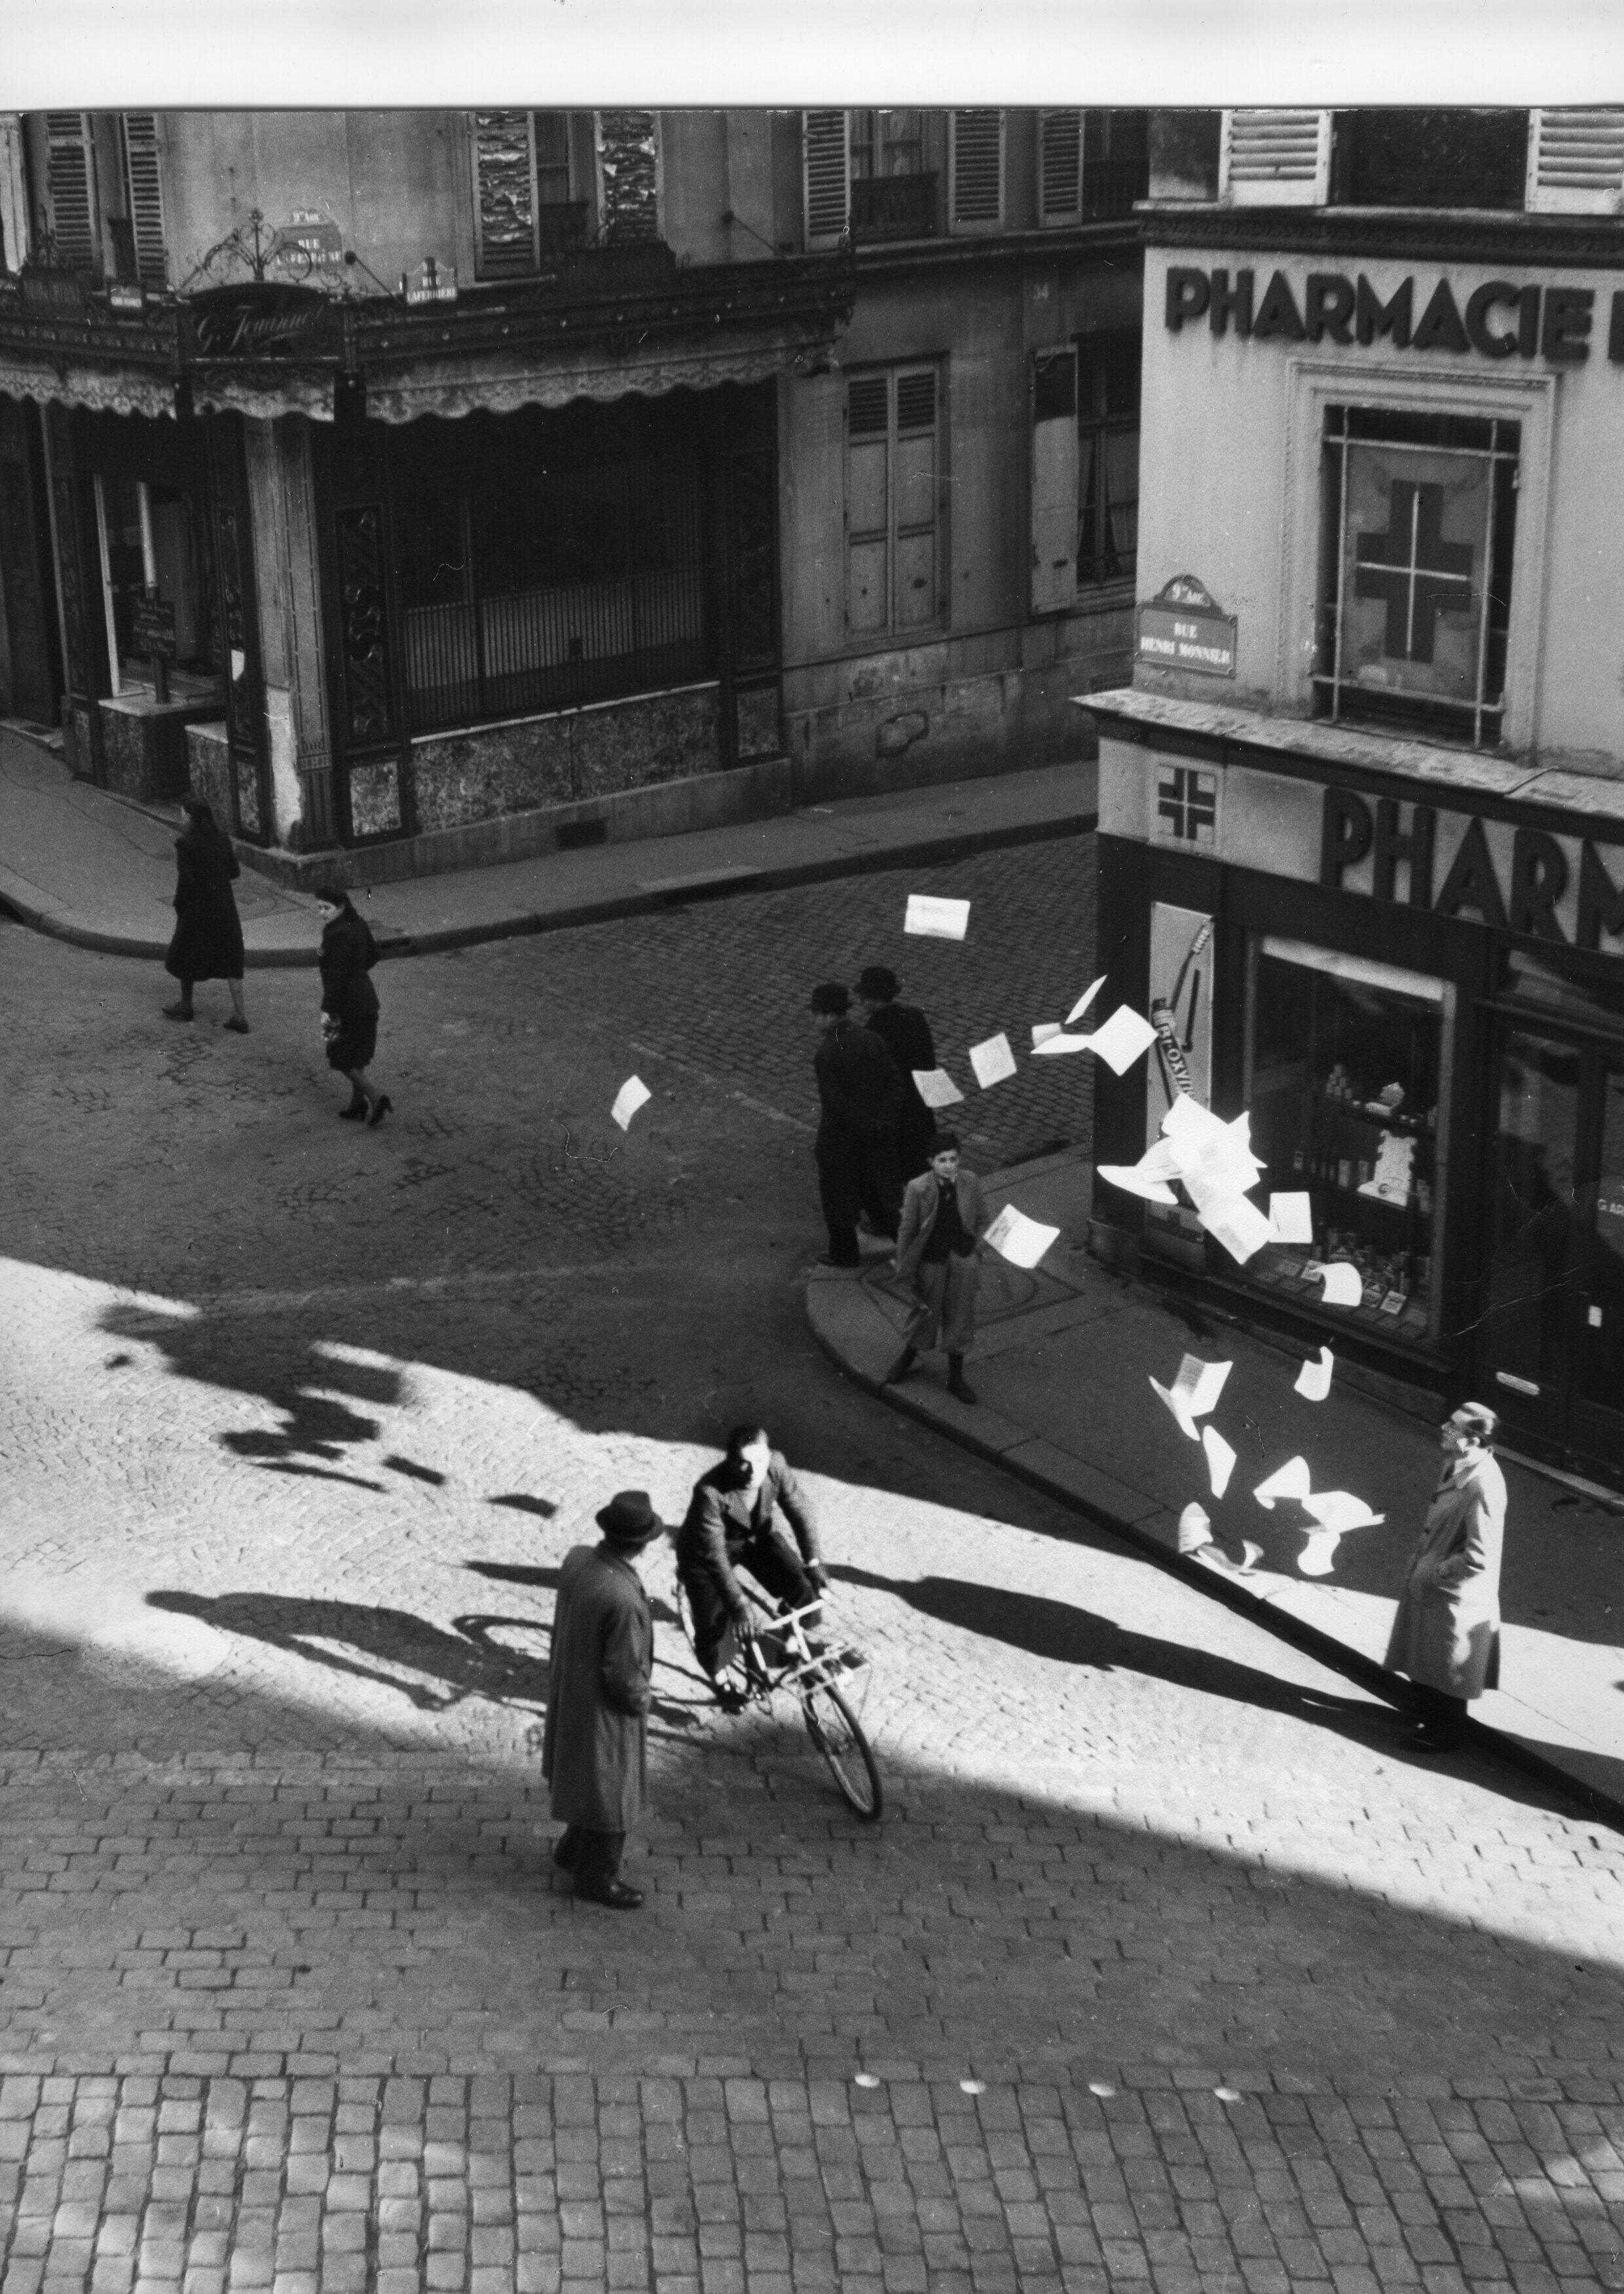 Ein Widerstandskämpfer verteilt Flugblätter in der Pariser Rue Henry Monnier als Teil einer rekonstruierten Fotoserie von Robert Doisneau über geheime Drucker im Zweiten Weltkrieg |  AAMRN-Sammlung, Museum des nationalen Widerstands in Champigny-sur-Marne.